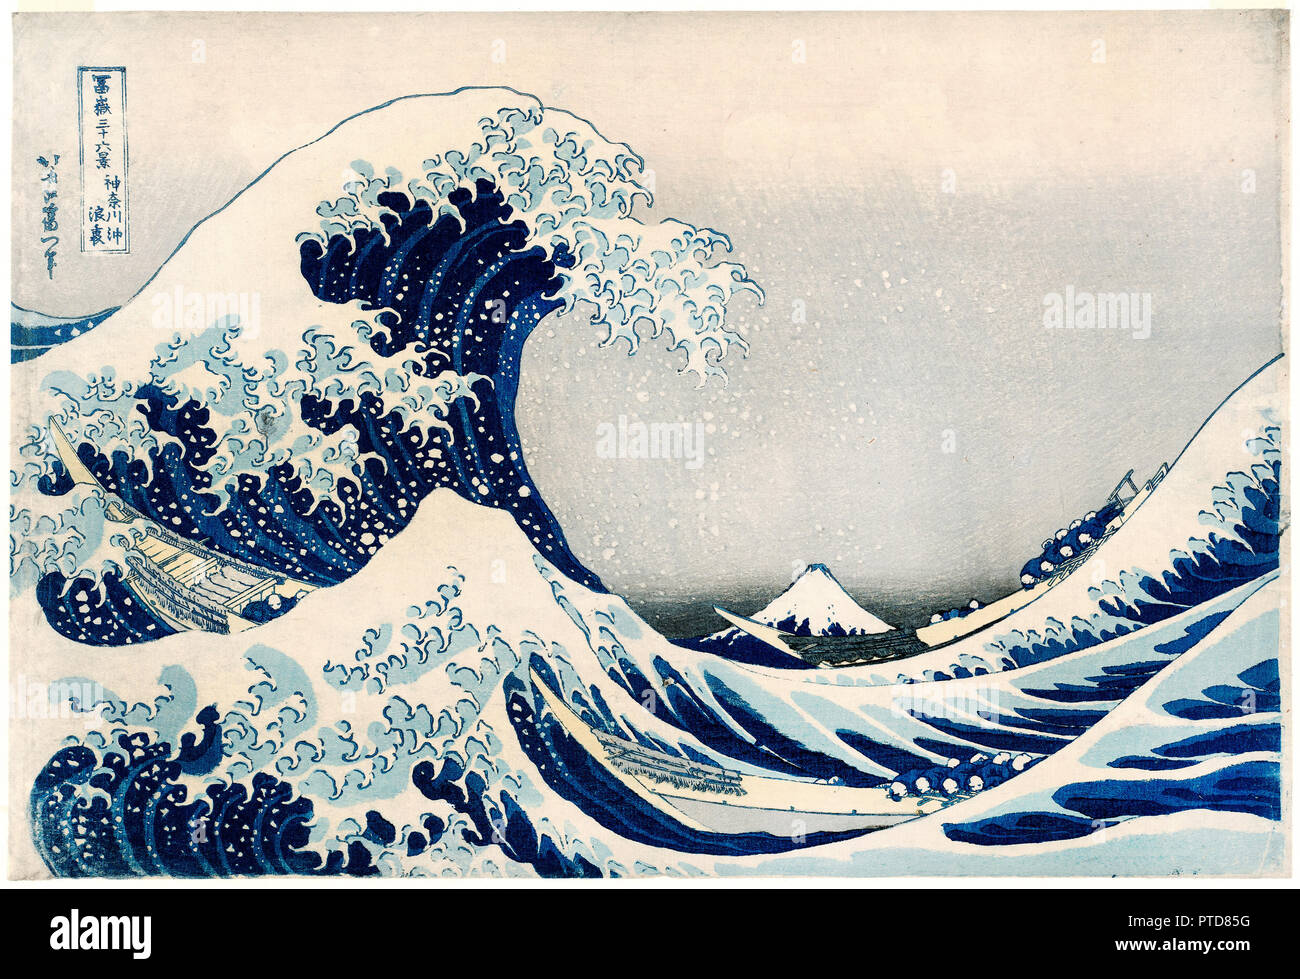 Katsushika Hokusai, sous la vague de Kanagawa / Kanagawa-oki nami-ura, également connu sous le nom de la grande vague, de la série trente-six vues du Mont Fuji / Circa 1830-1831, Fugaku sanjurokkei, gravure sur bois en couleur, Musée des beaux-arts de Boston, USA. Banque D'Images